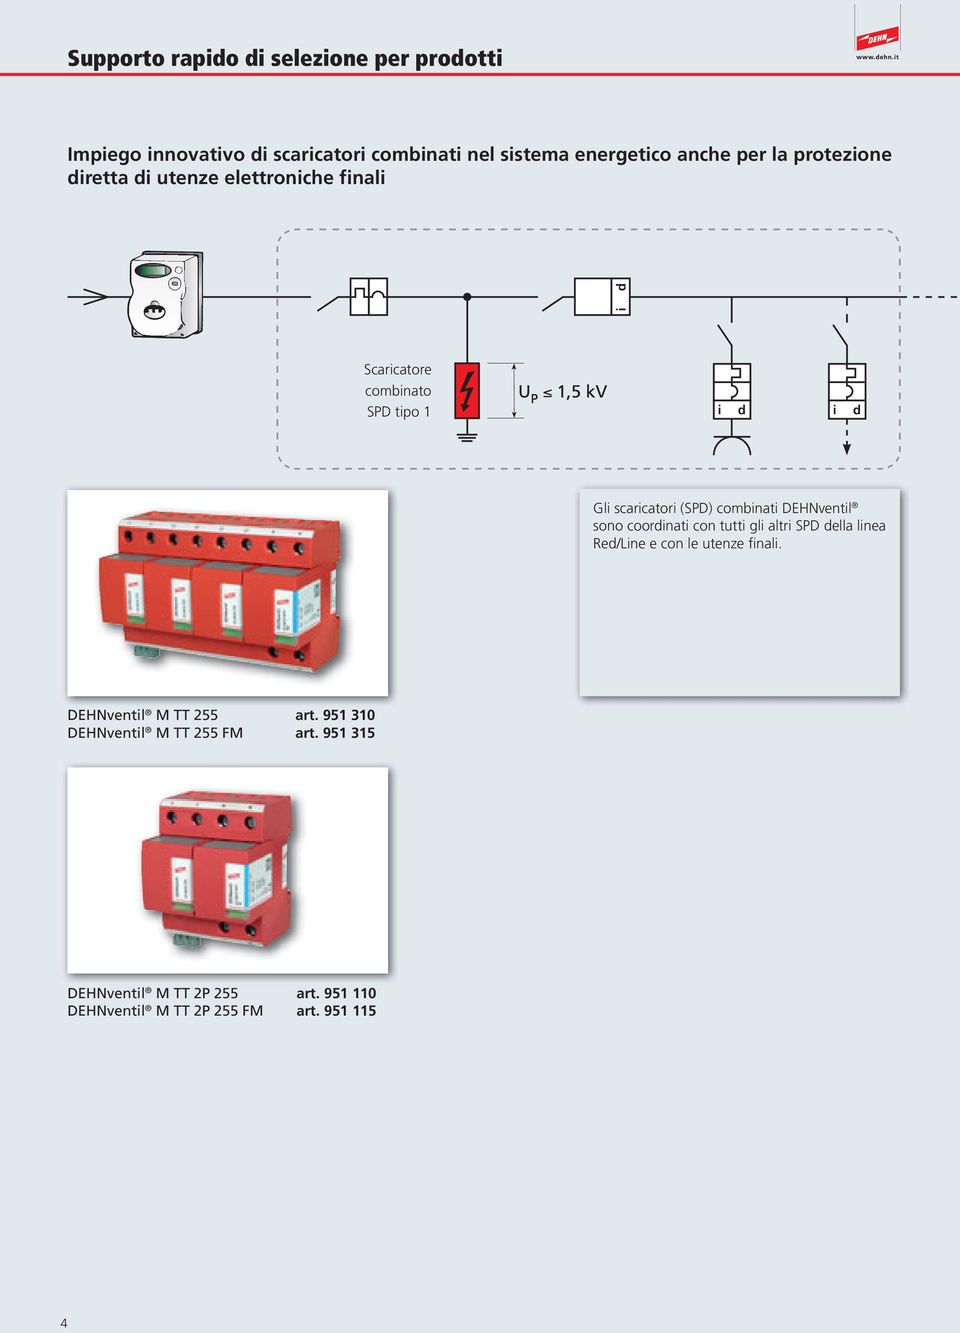 (SPD) combinati DEHNventil sono coordinati con tutti gli altri SPD della linea Red/Line e con le utenze finali.